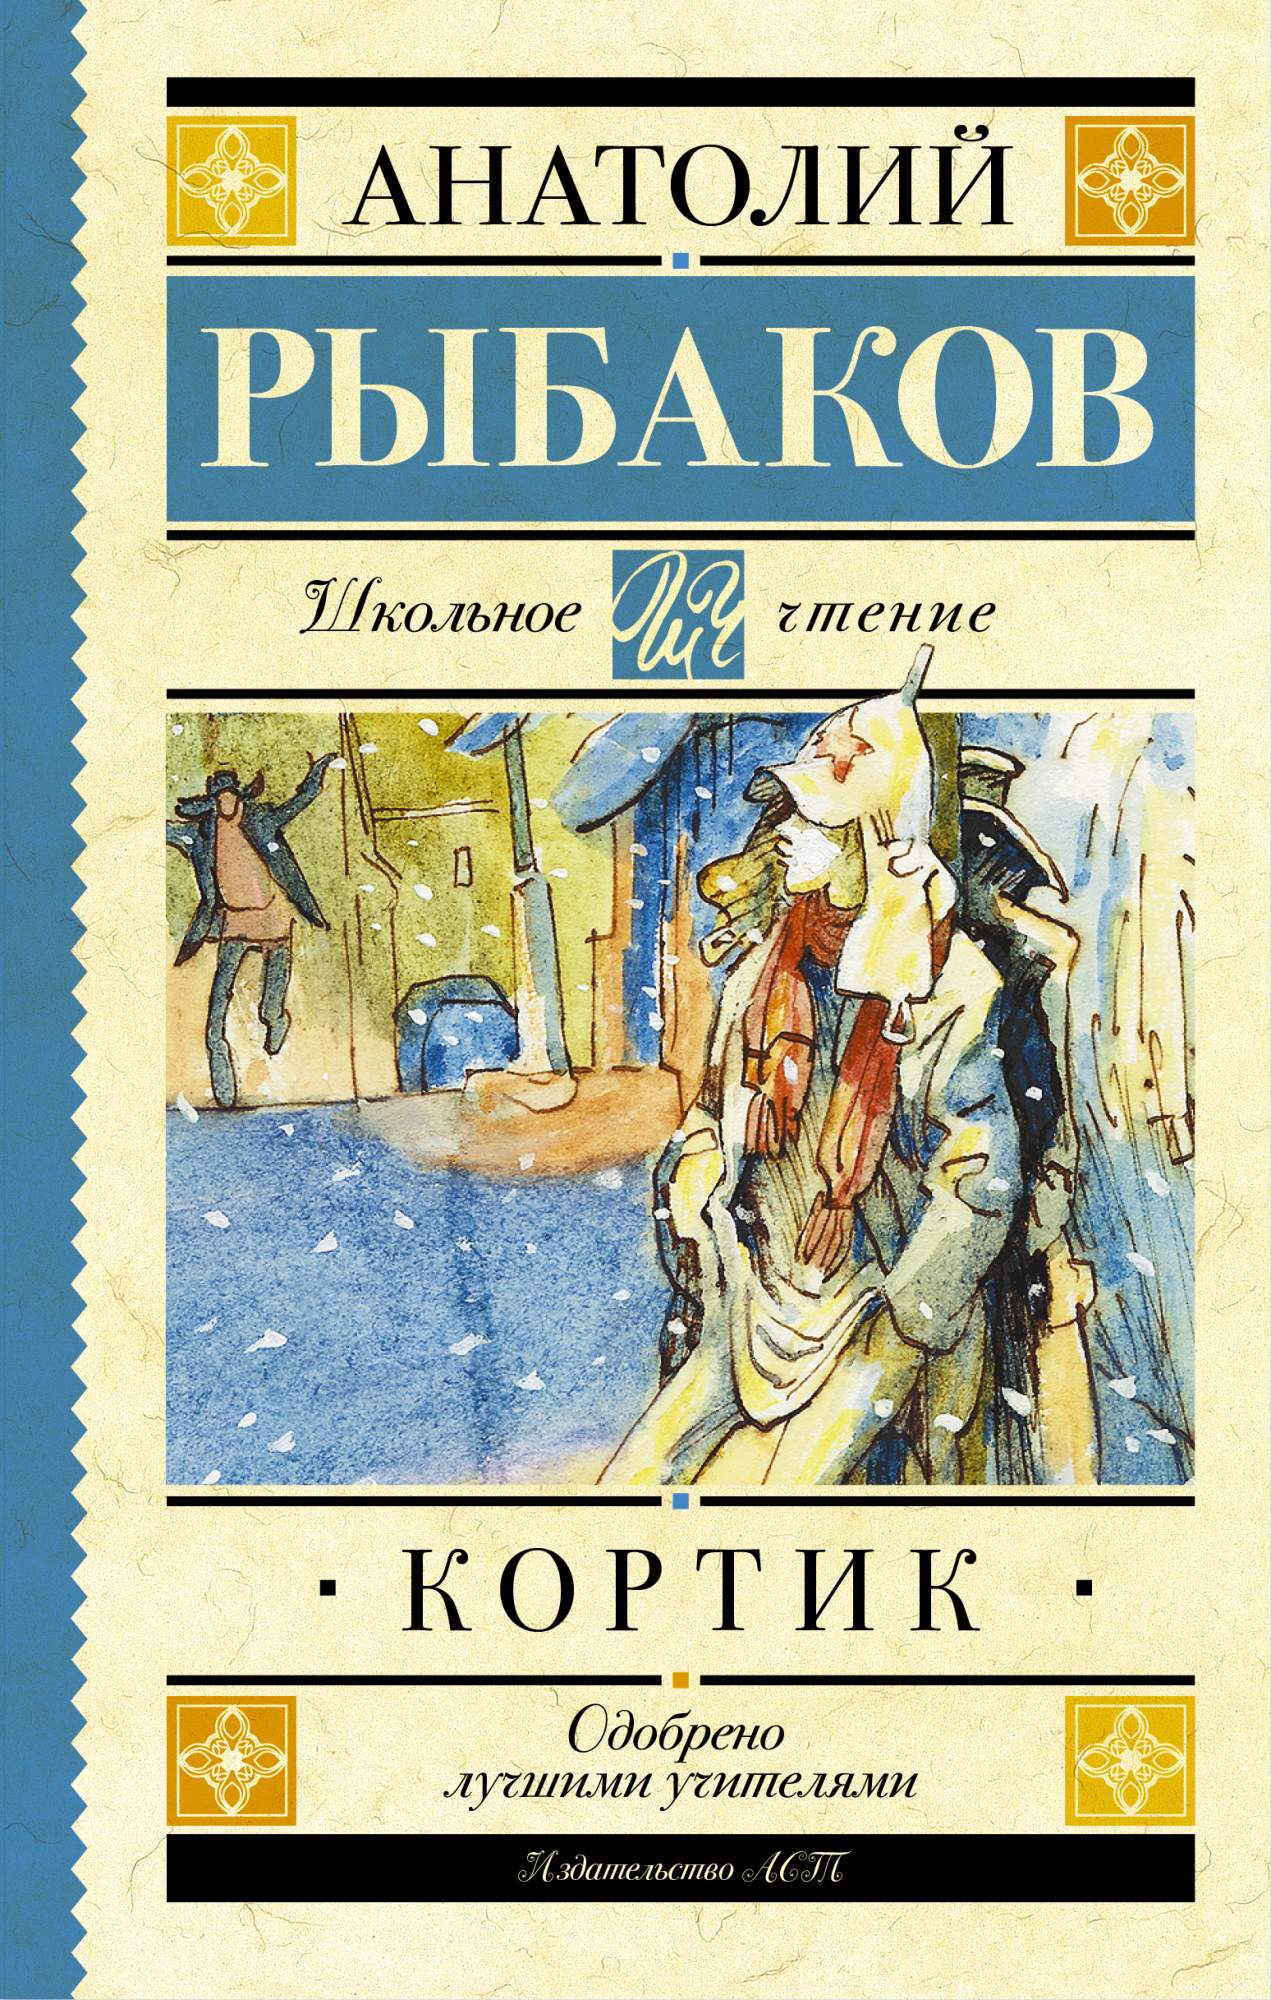 Обложка книги а.н.Рыбакова 